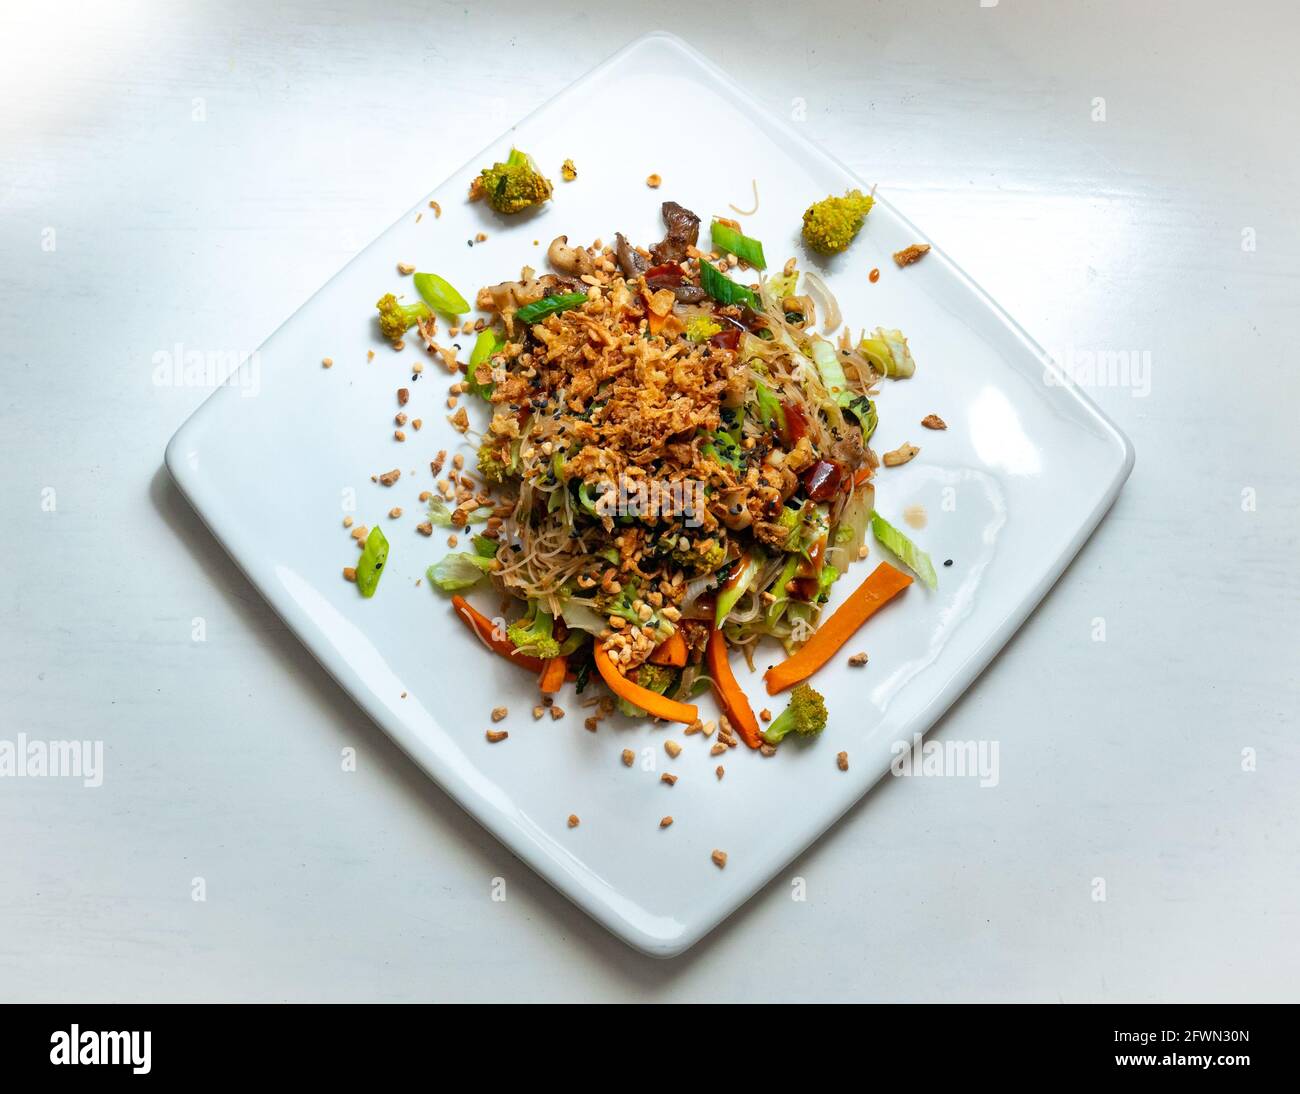 Pad Thai Vegan, Arroz de fideos con verduras salteadas, Broccoli, Carrot, cebolla blanca y verde, setas de la ostra, cacahuetes picados Foto de stock